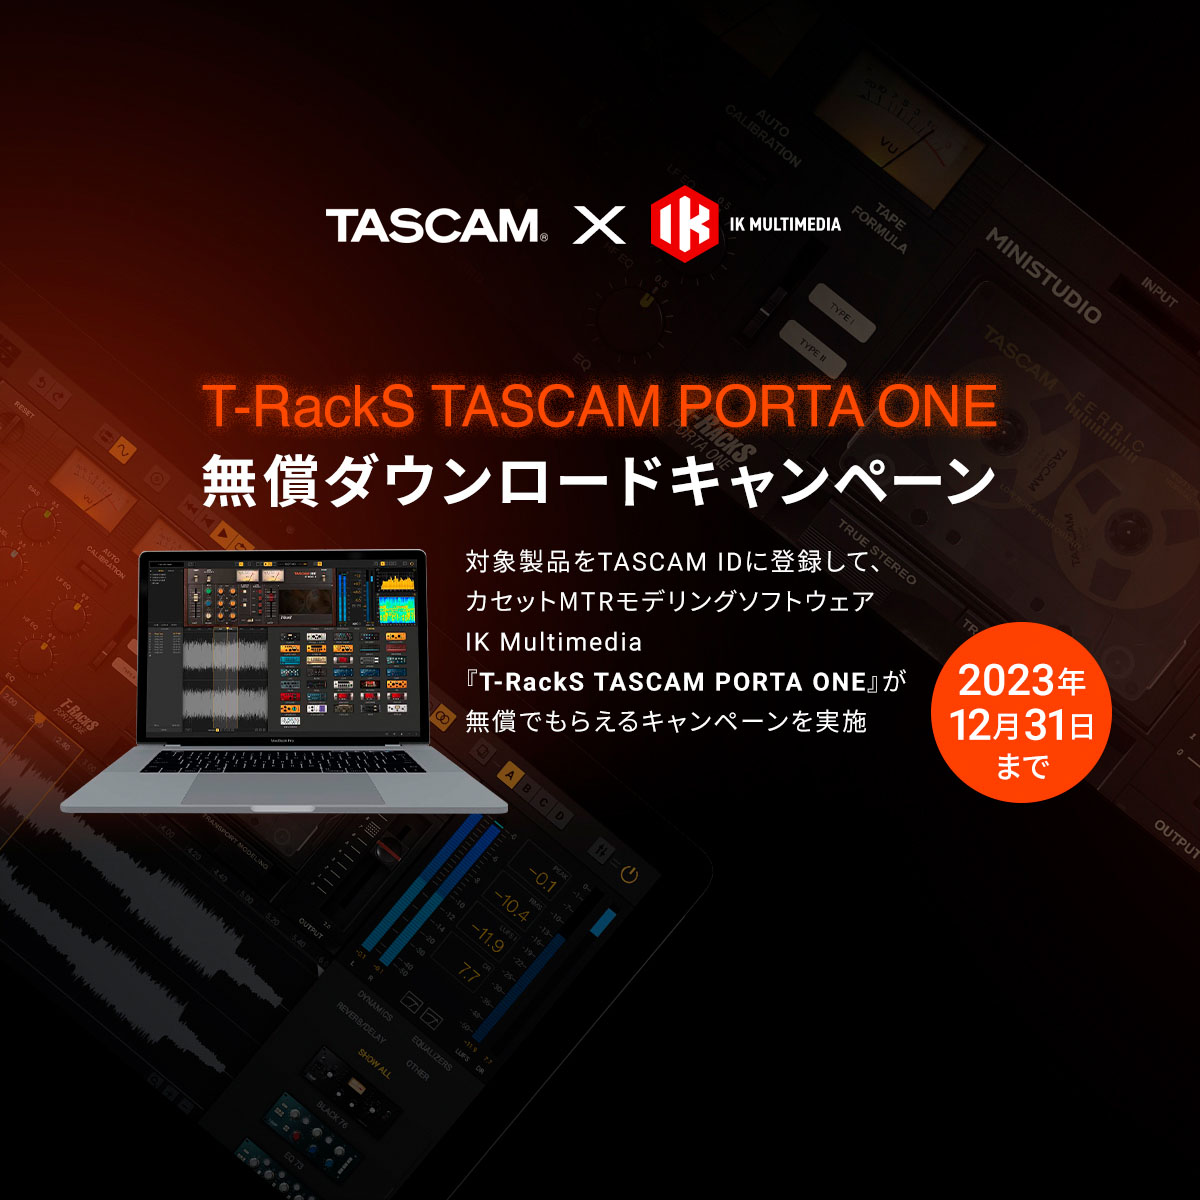 	TASCAM Modelシリーズなど対象製品の購入でカセットMTRモデリング ソフトウェア『IK Multimedia TASCAM PORTA ONE』がもらえるキャンペーンを実施。